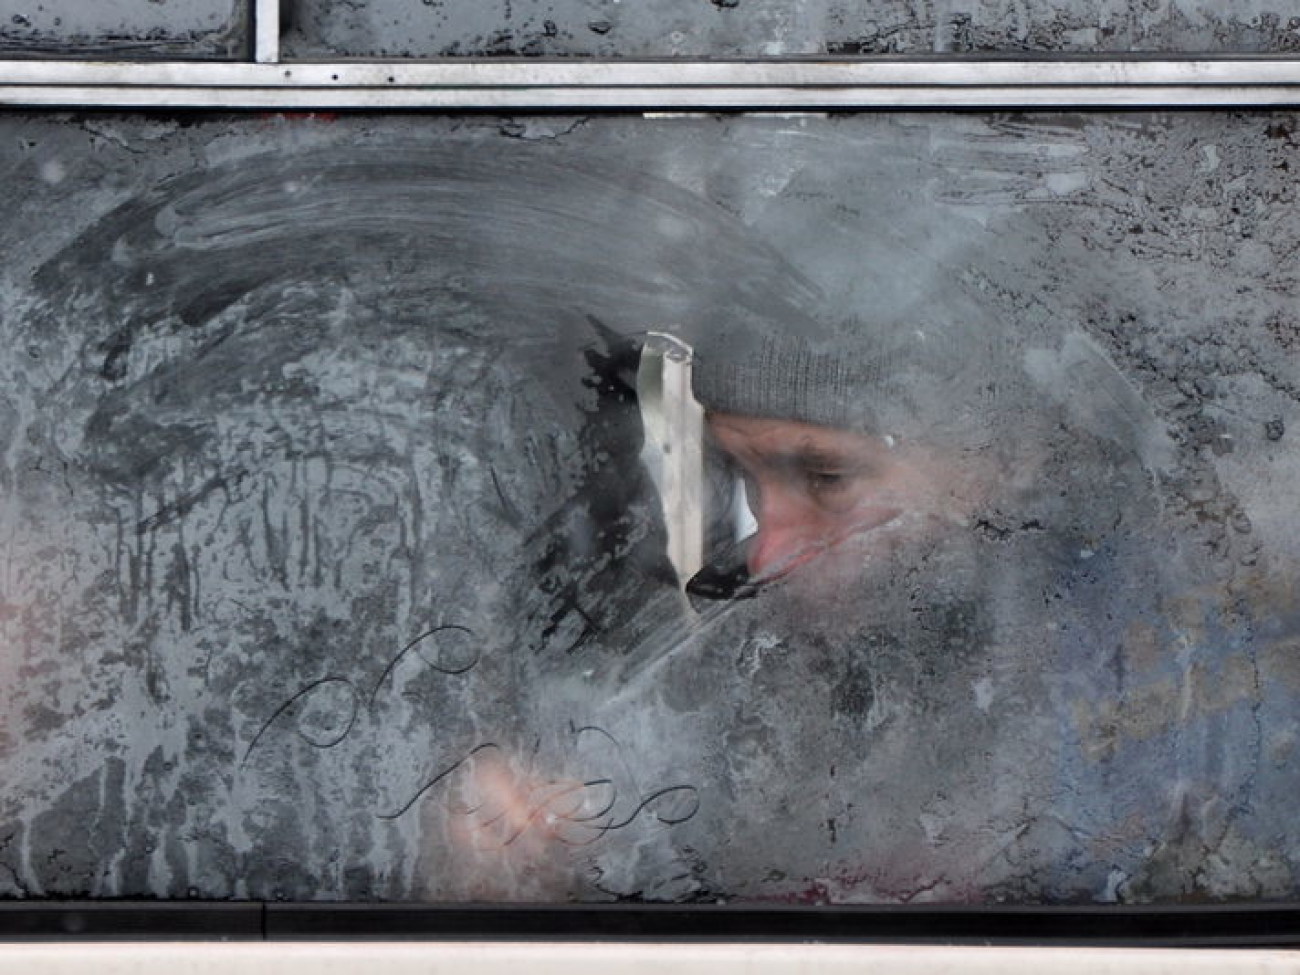 Лед и сугробы на улицах Киева, 10 января 2013г.